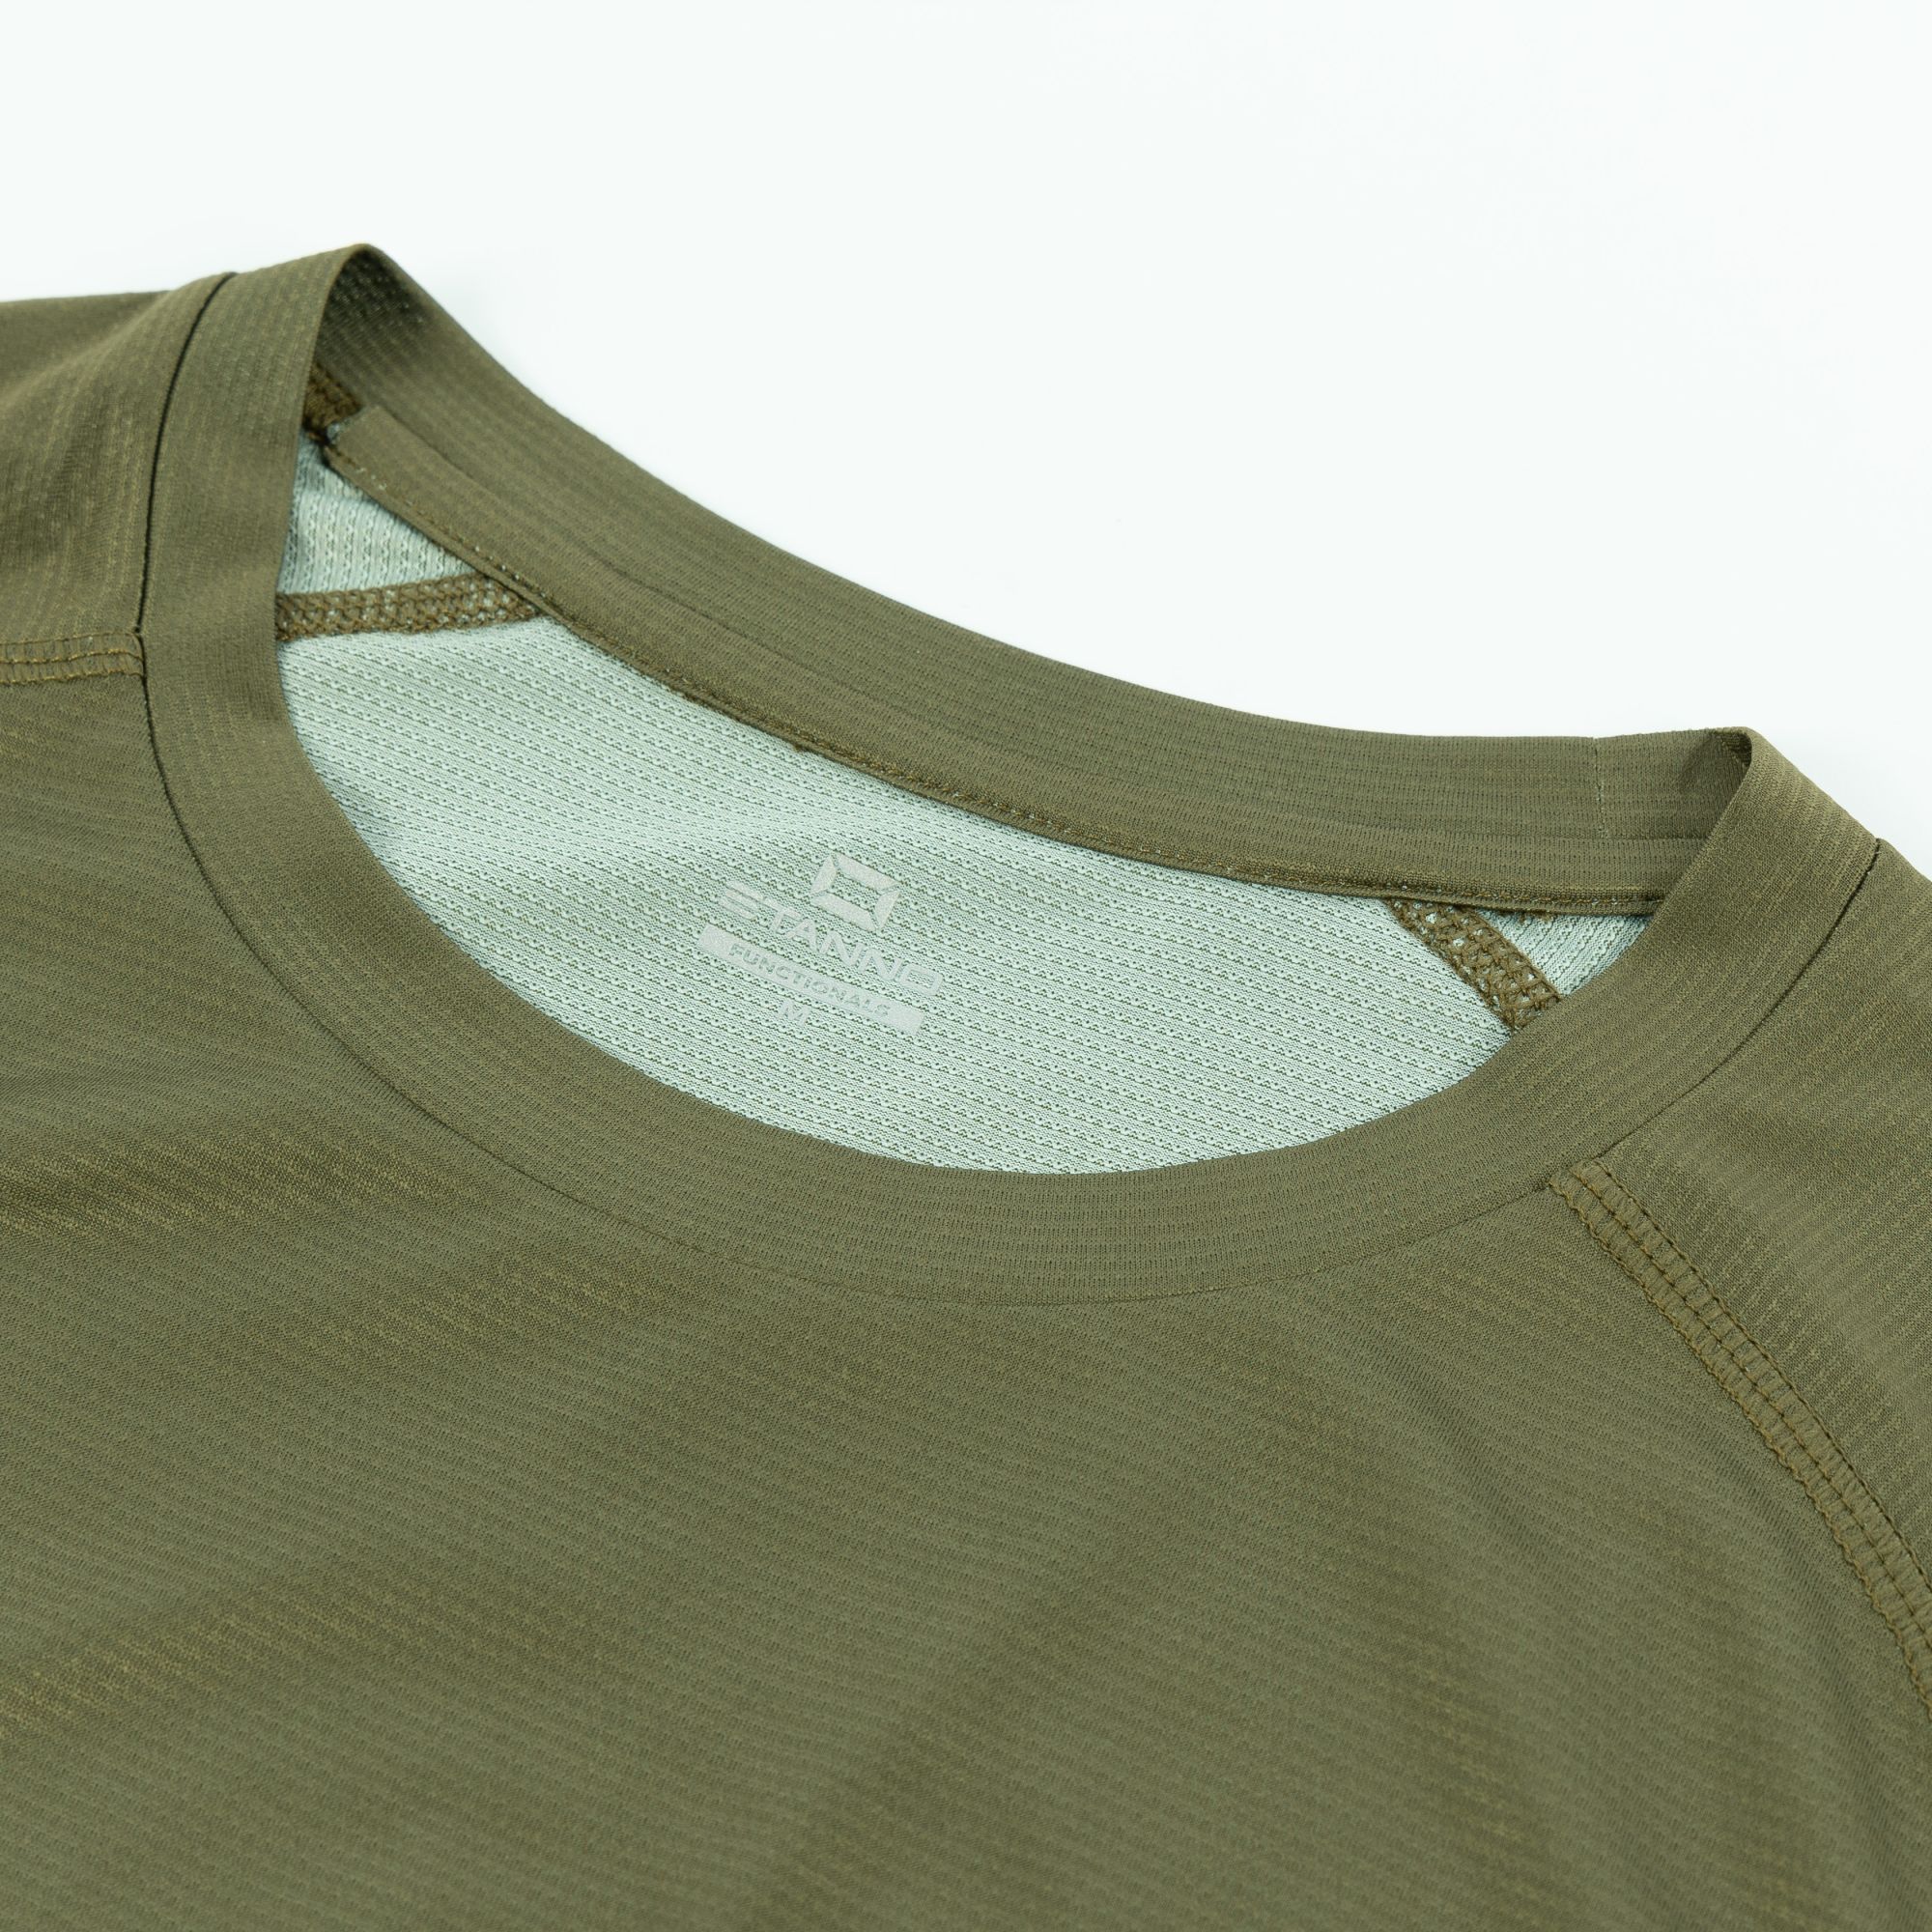 Stanno Functionals Lightweight T-Shirt Unisex